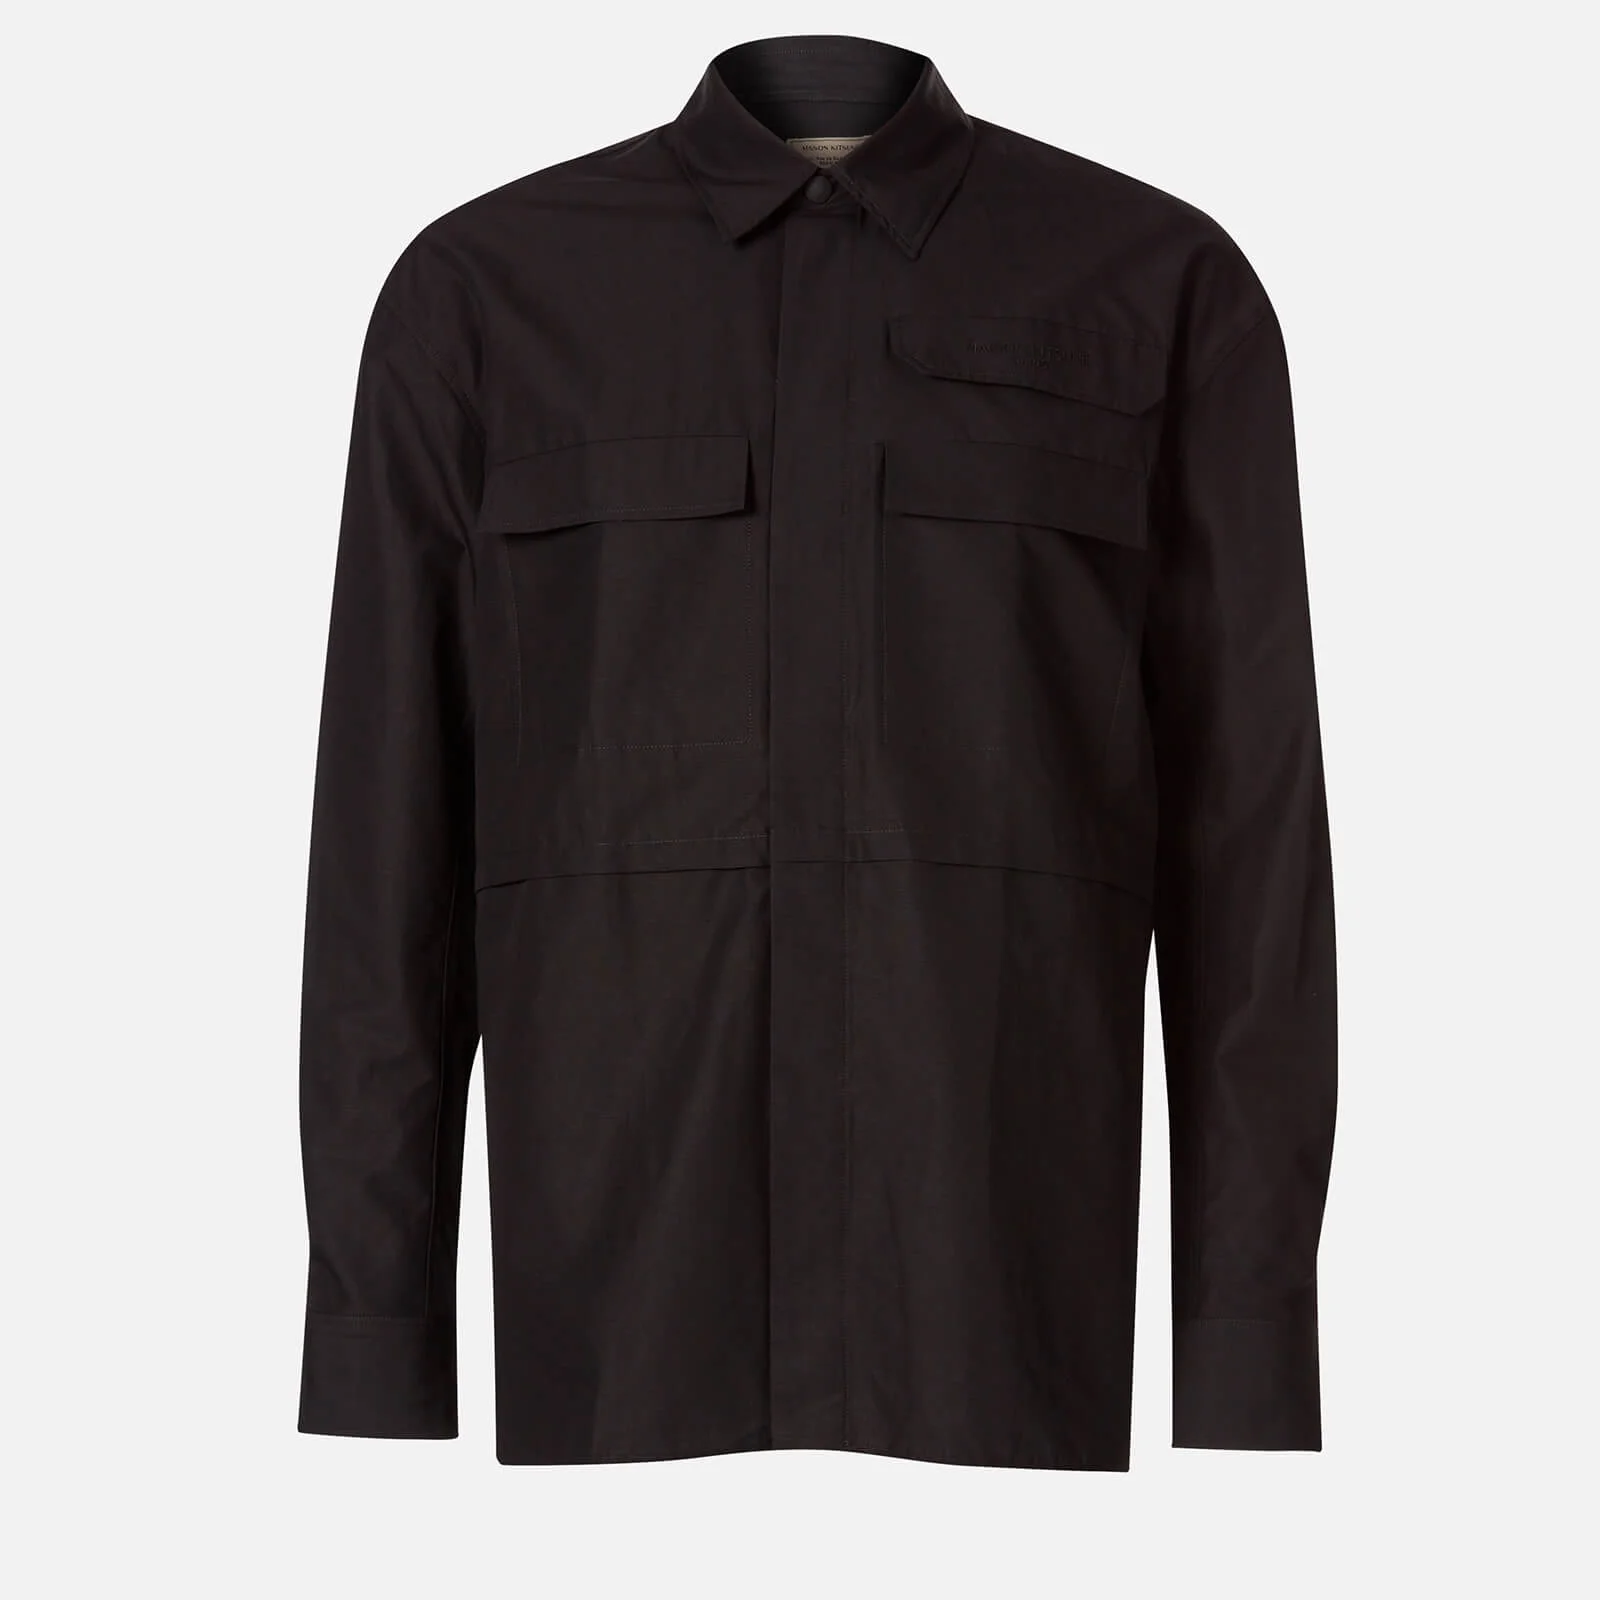 Maison Kitsuné Men's Multi Pocket Overshirt - Black Image 1